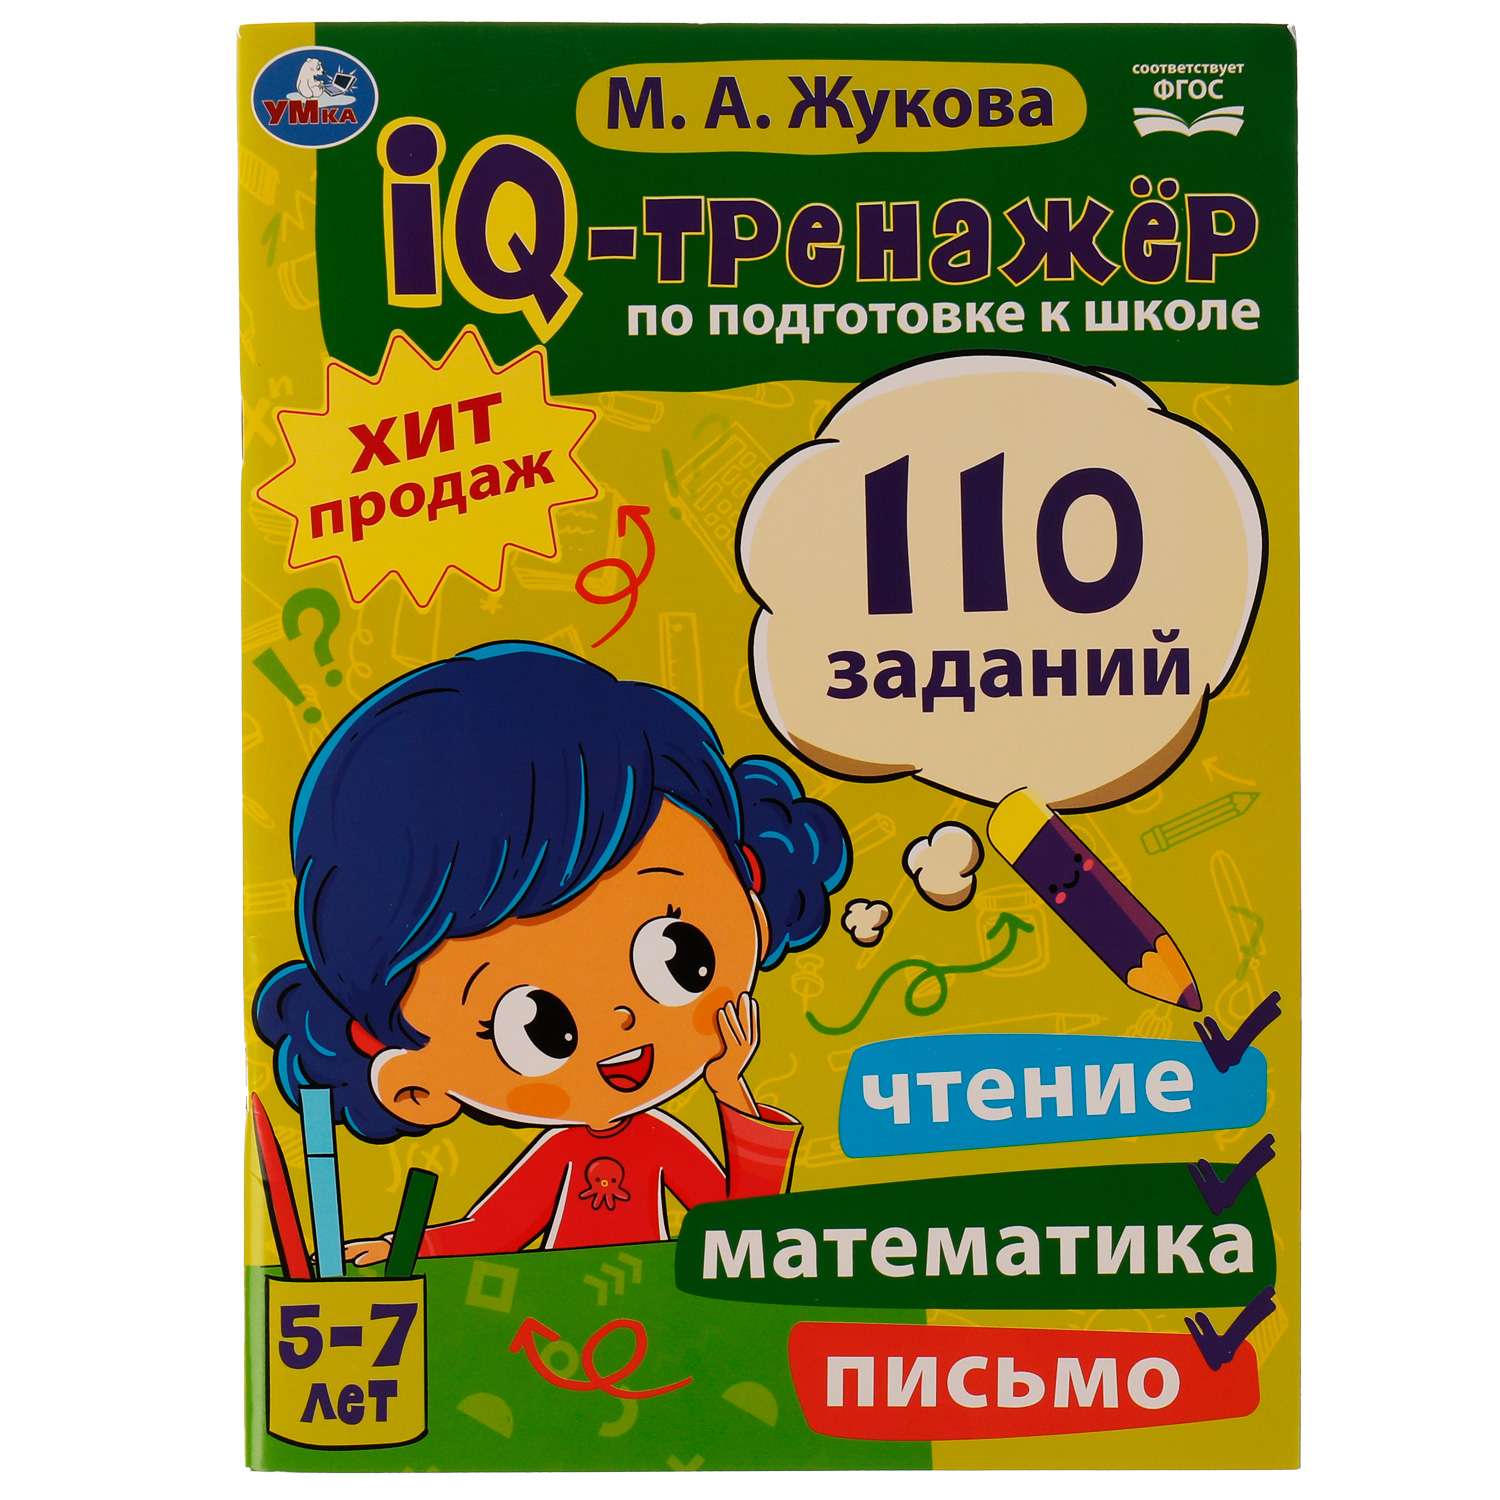 Книга УМка IQ-тренажер по подготовке к школе: чтение математика письмо - фото 1